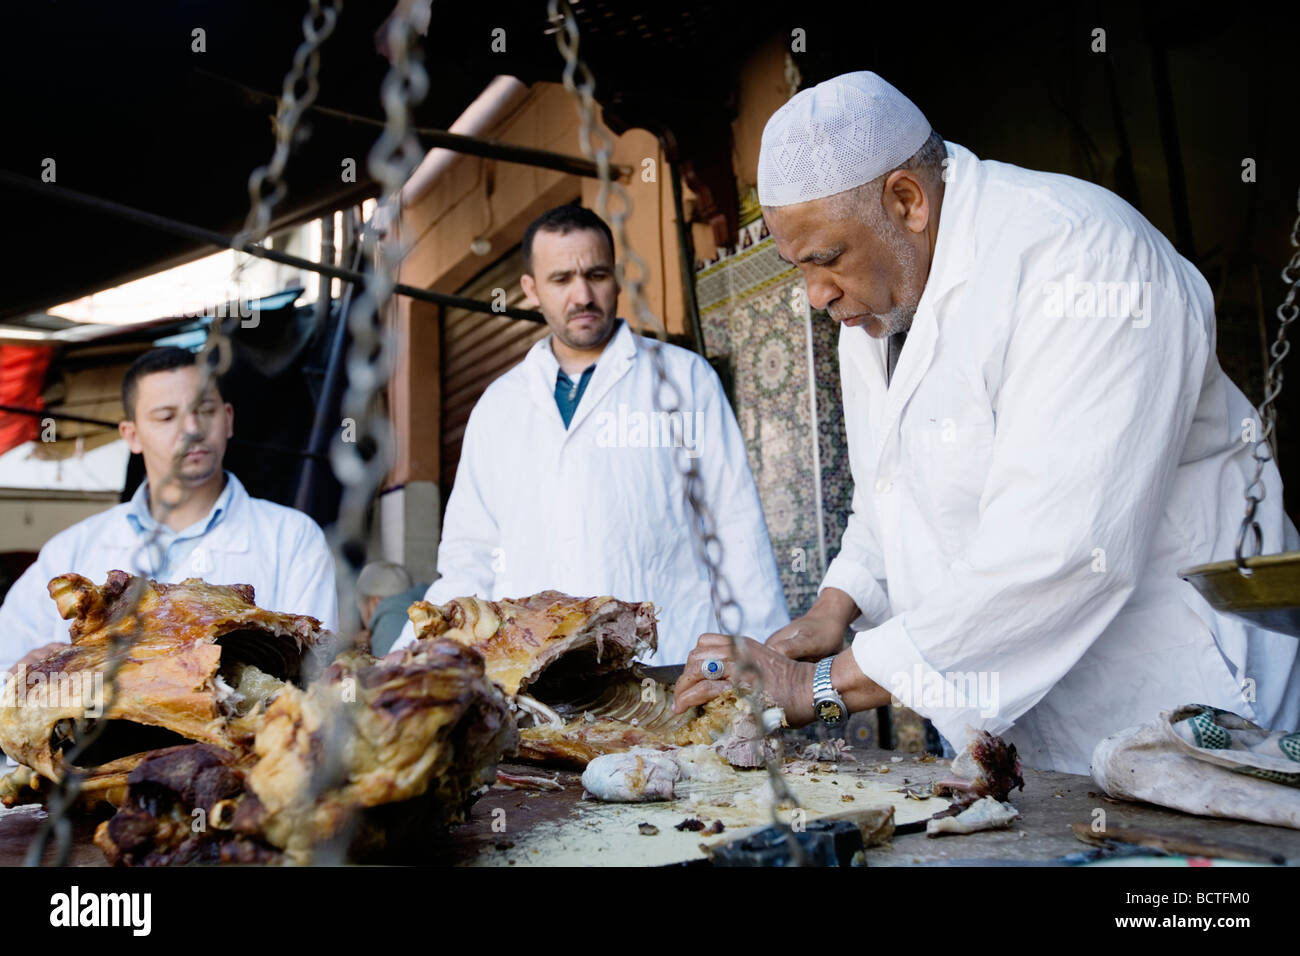 L'uomo vendita di deliziosi piatti a base di carne di agnello in un vicolo del mercato (souk o souq) nella città vecchia (a) Medina di Marrakech, Marocco. Foto Stock